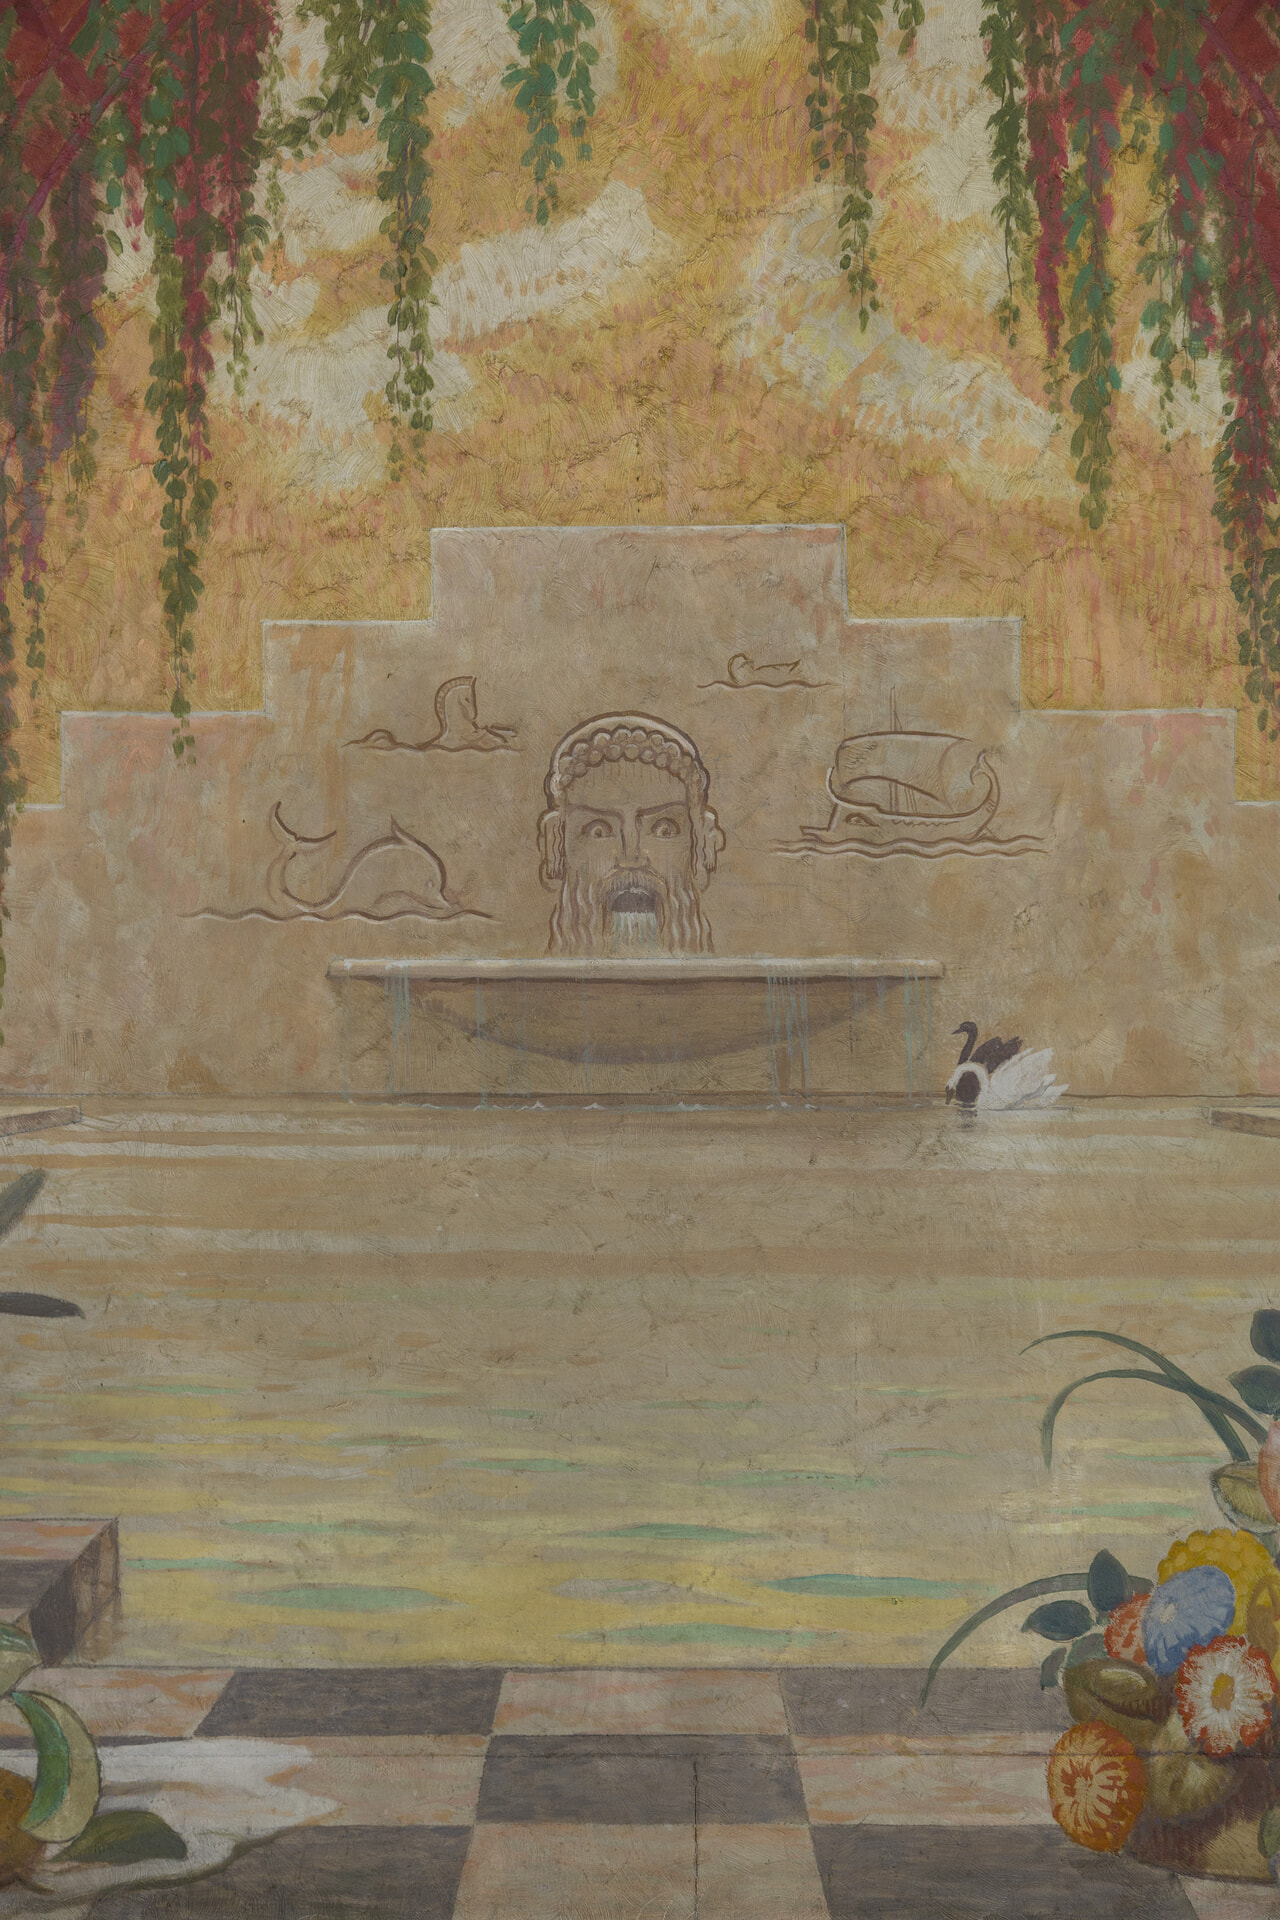 壁に描かれた彫刻の男性の口から水が流れその下に人工的な池。そこに白鳥がくつろいている。絵画